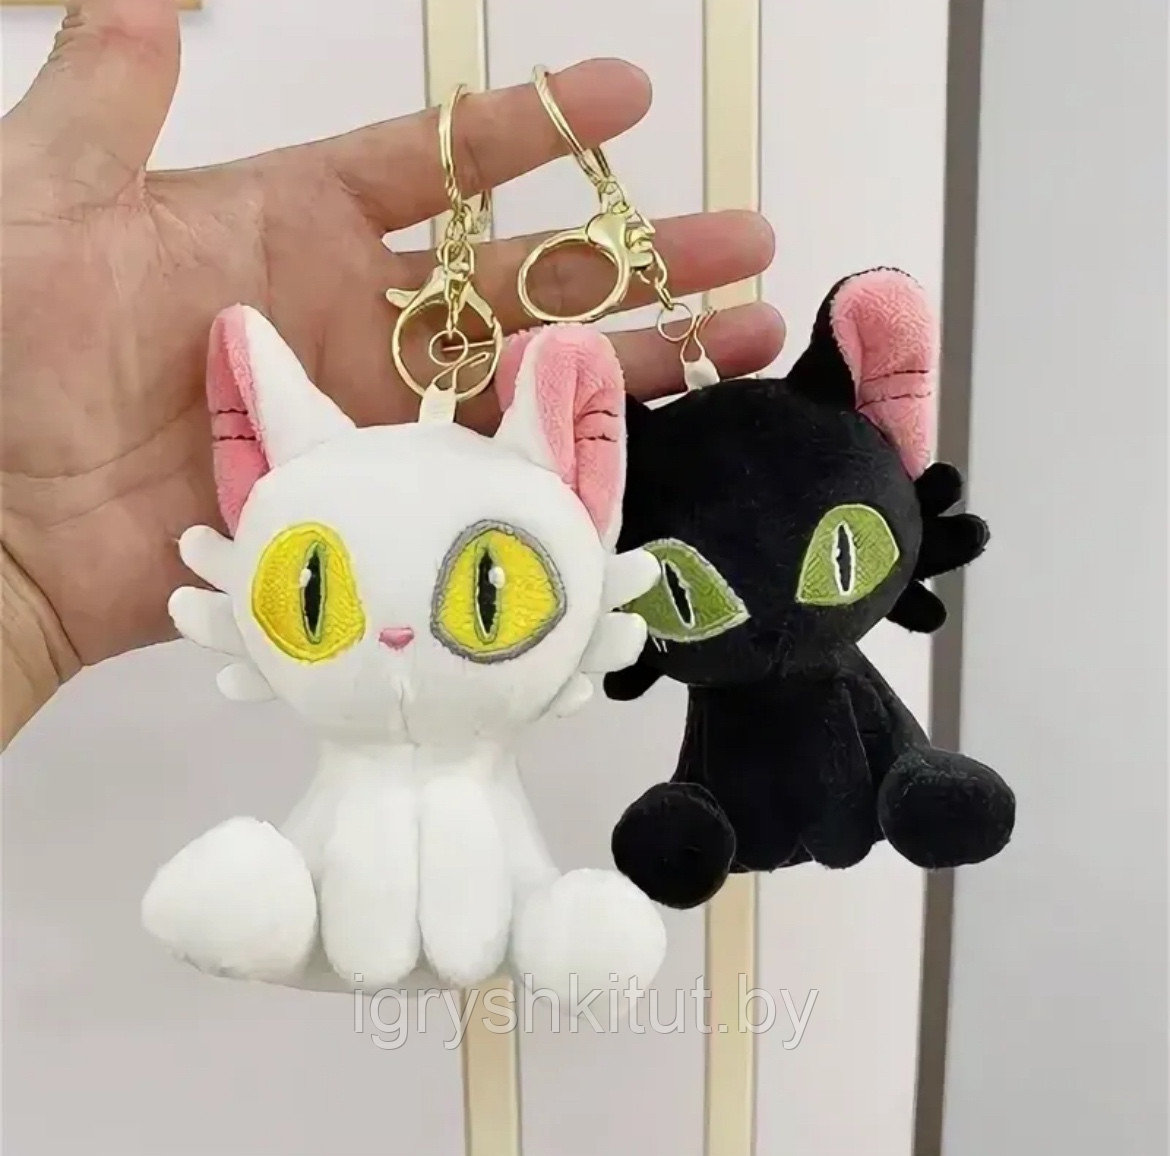 Мягкая игрушка брелок Котик, кот, кошка из аниме, разные цвета